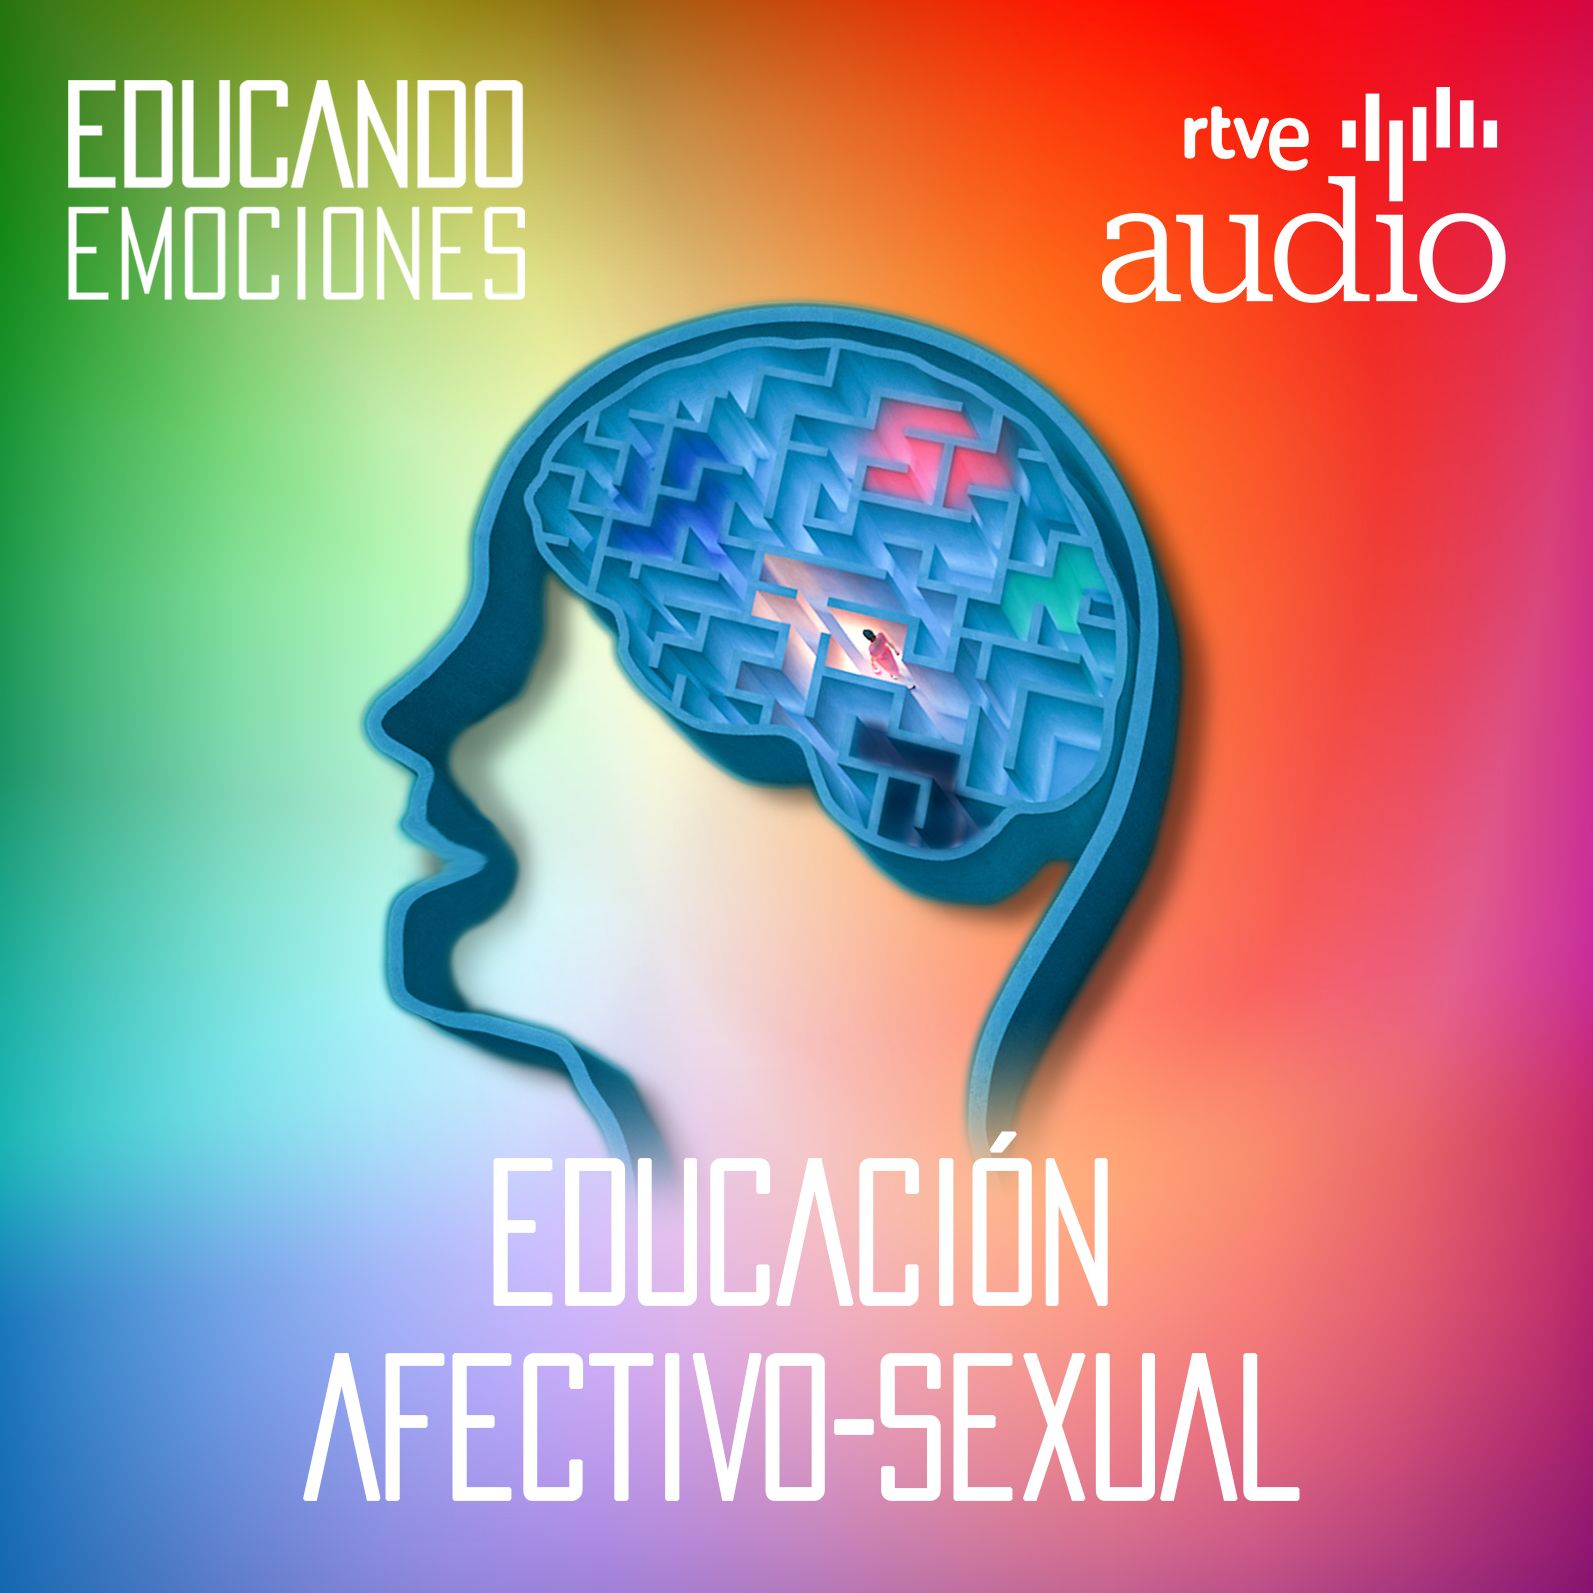 Educando emociones - Capítulo 5: Educación afectivo-sexual